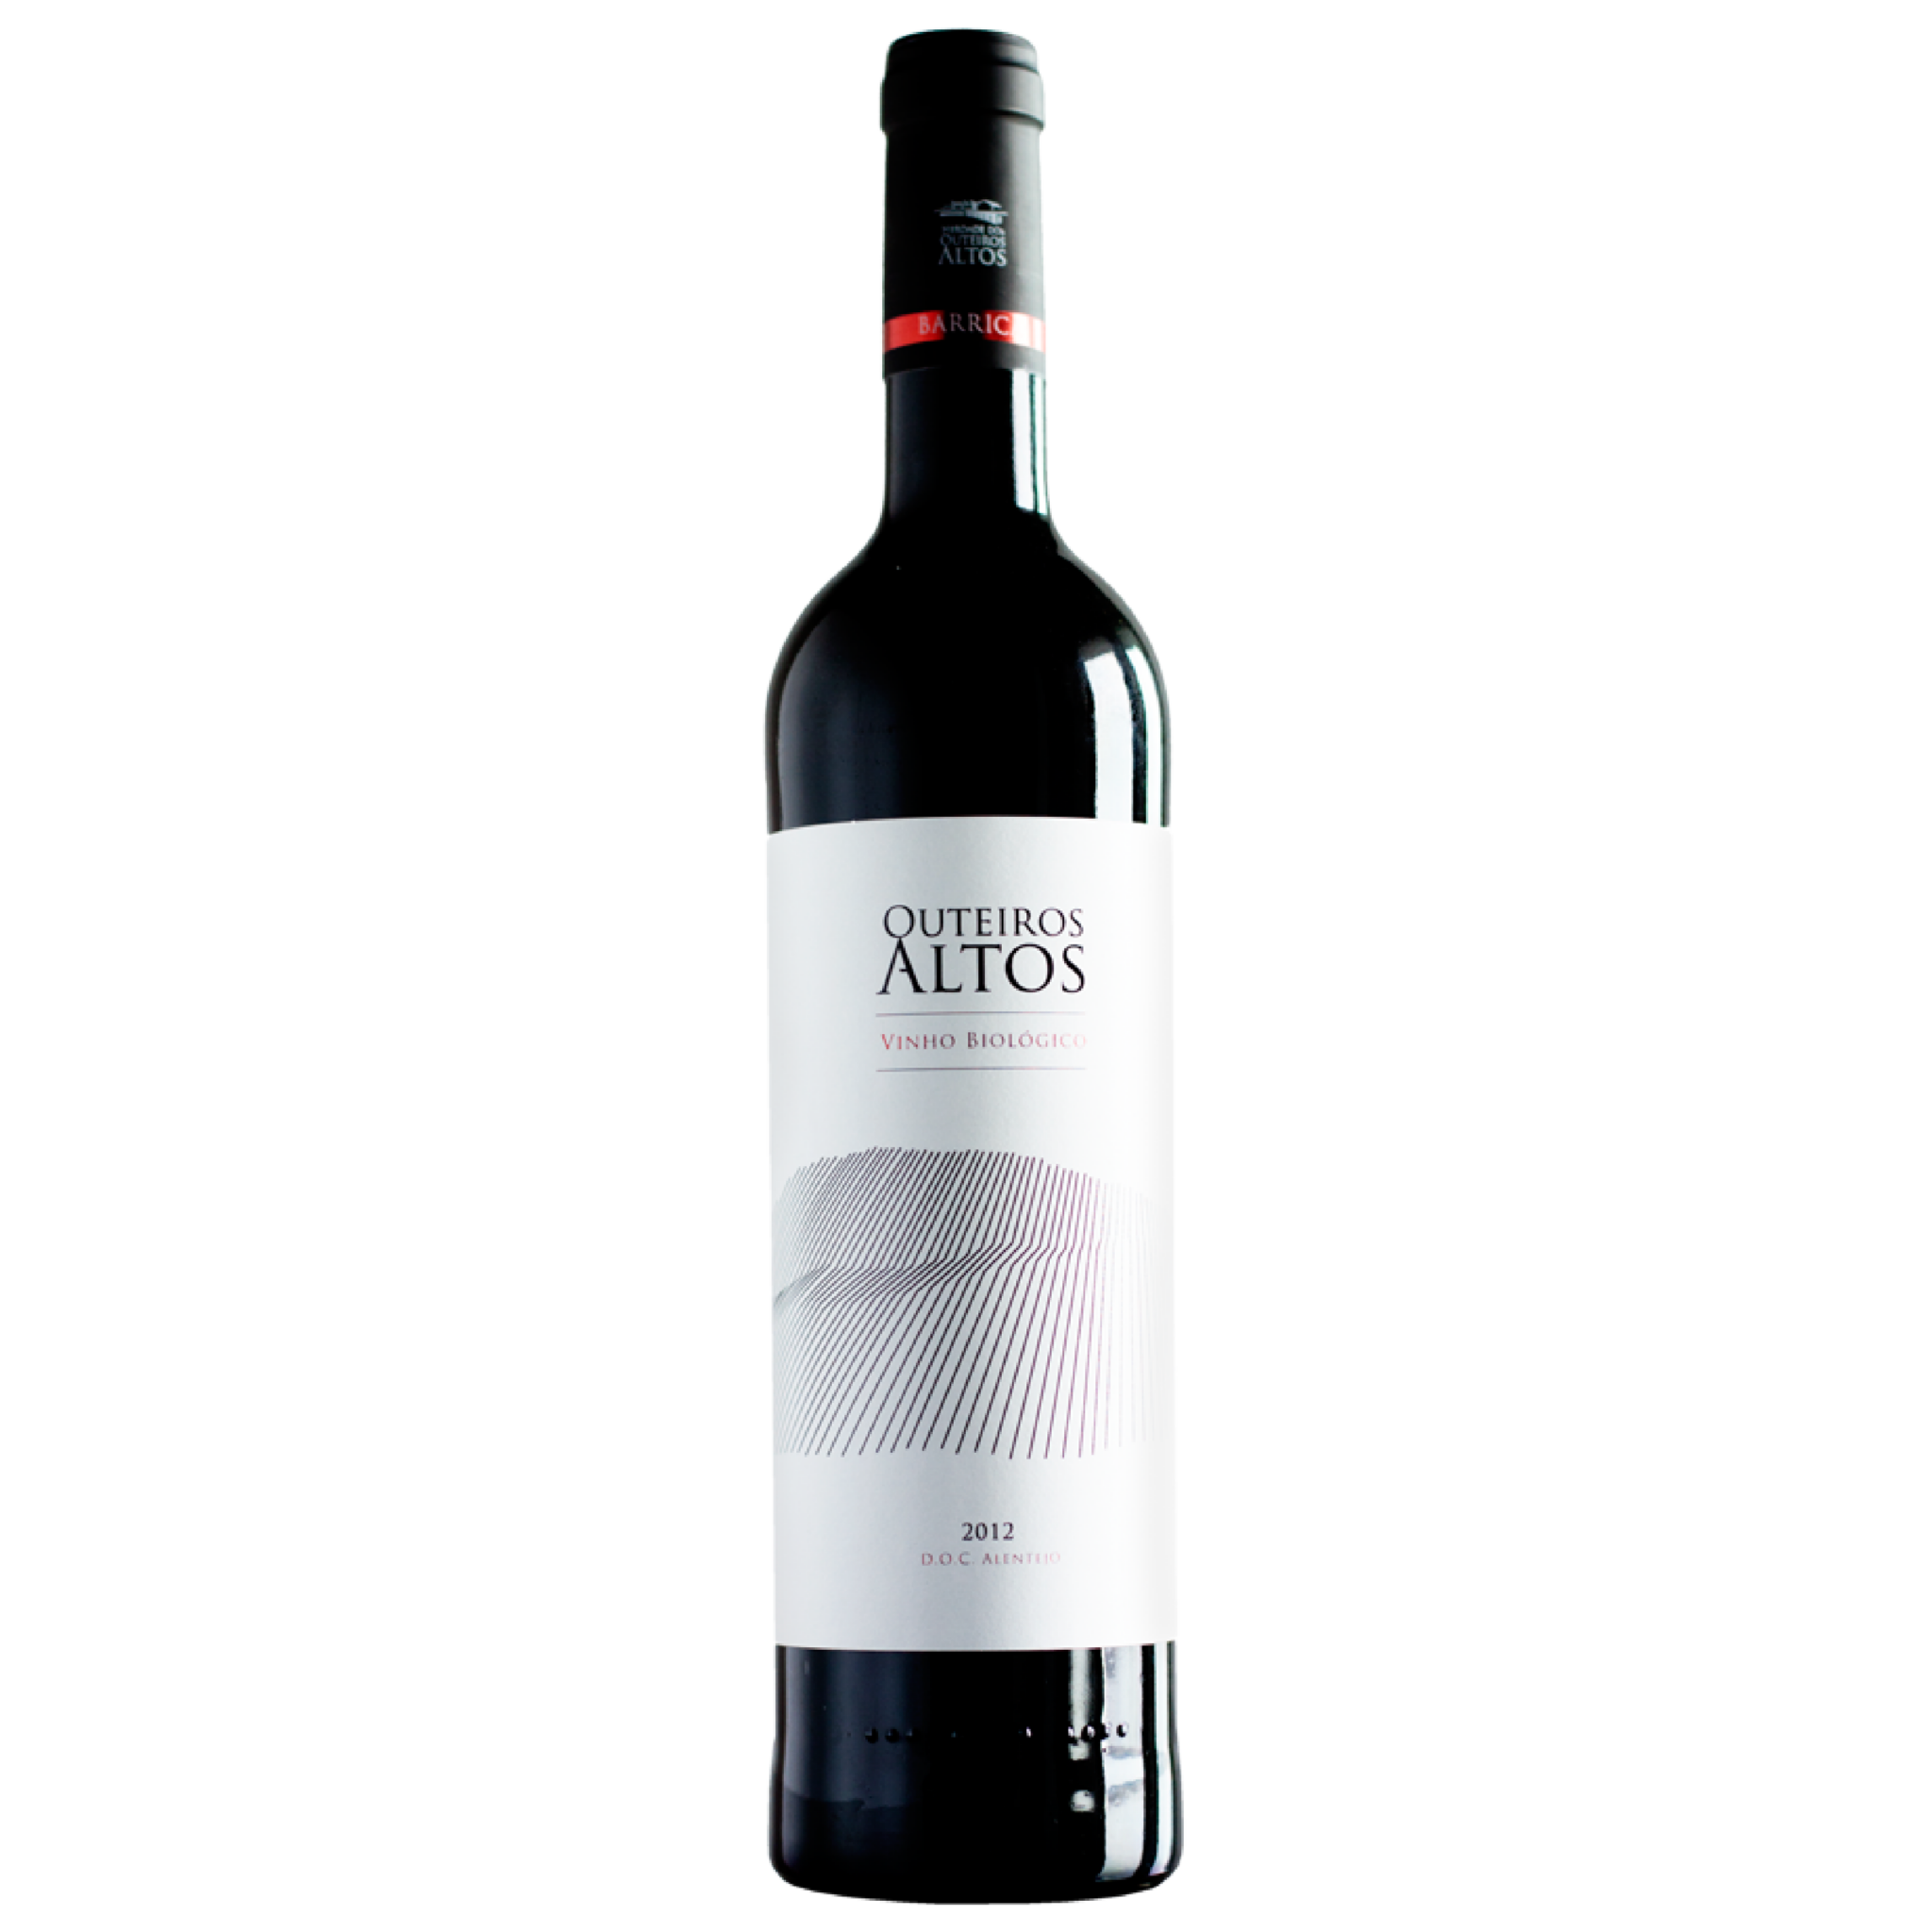 Outeiros Altos Barrica red wine